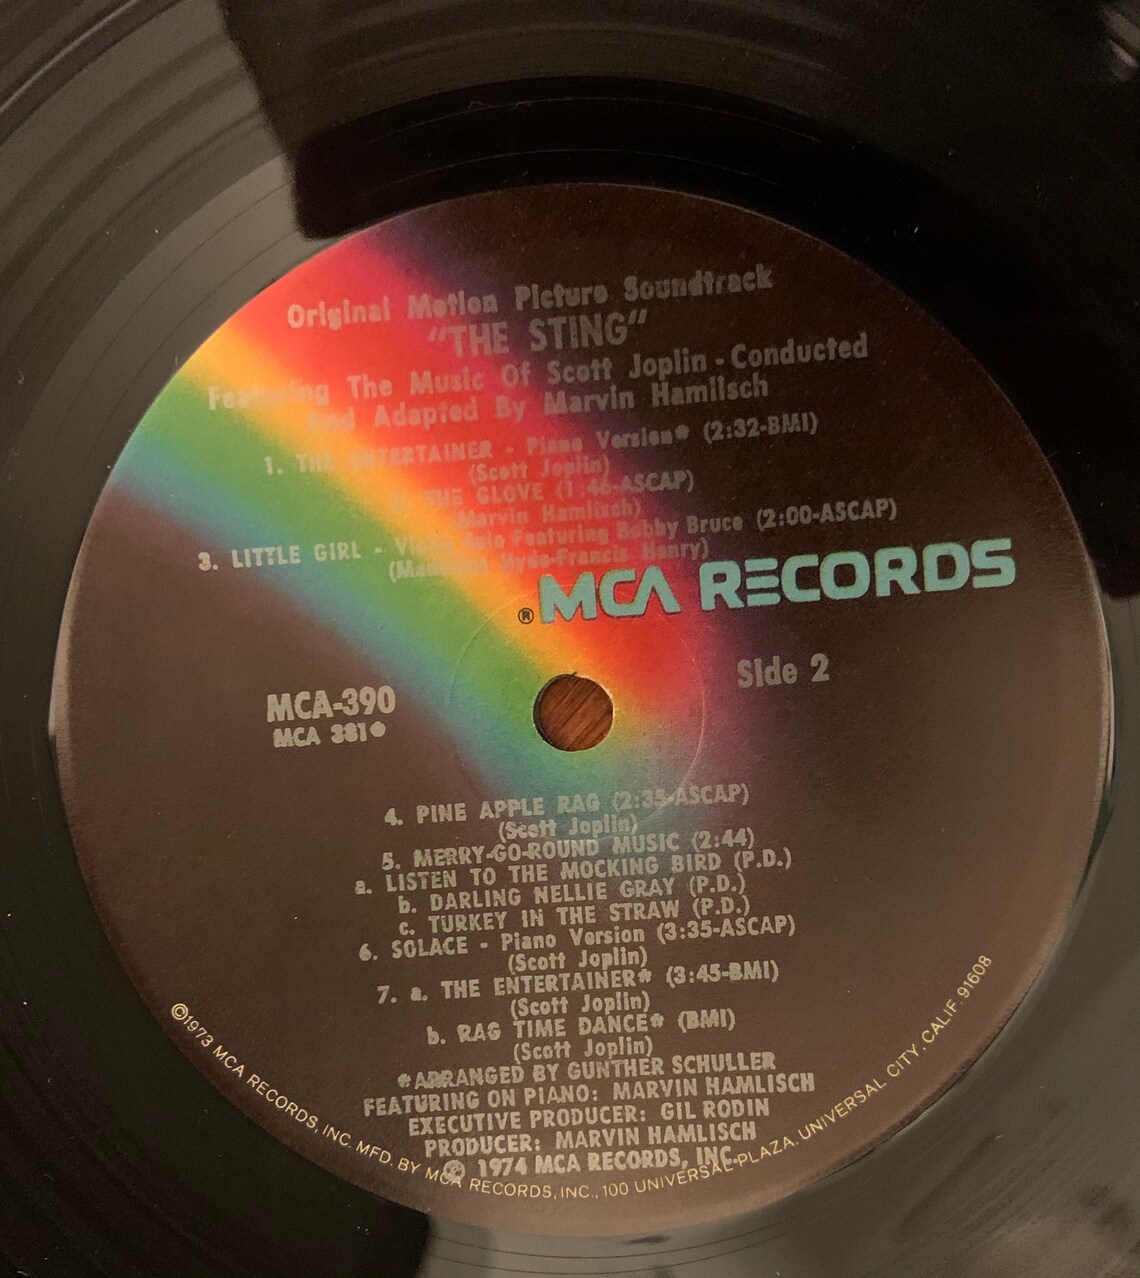 Vintage 1973 Vinyl Album The Sting Original Soundtrack LP | Etsy